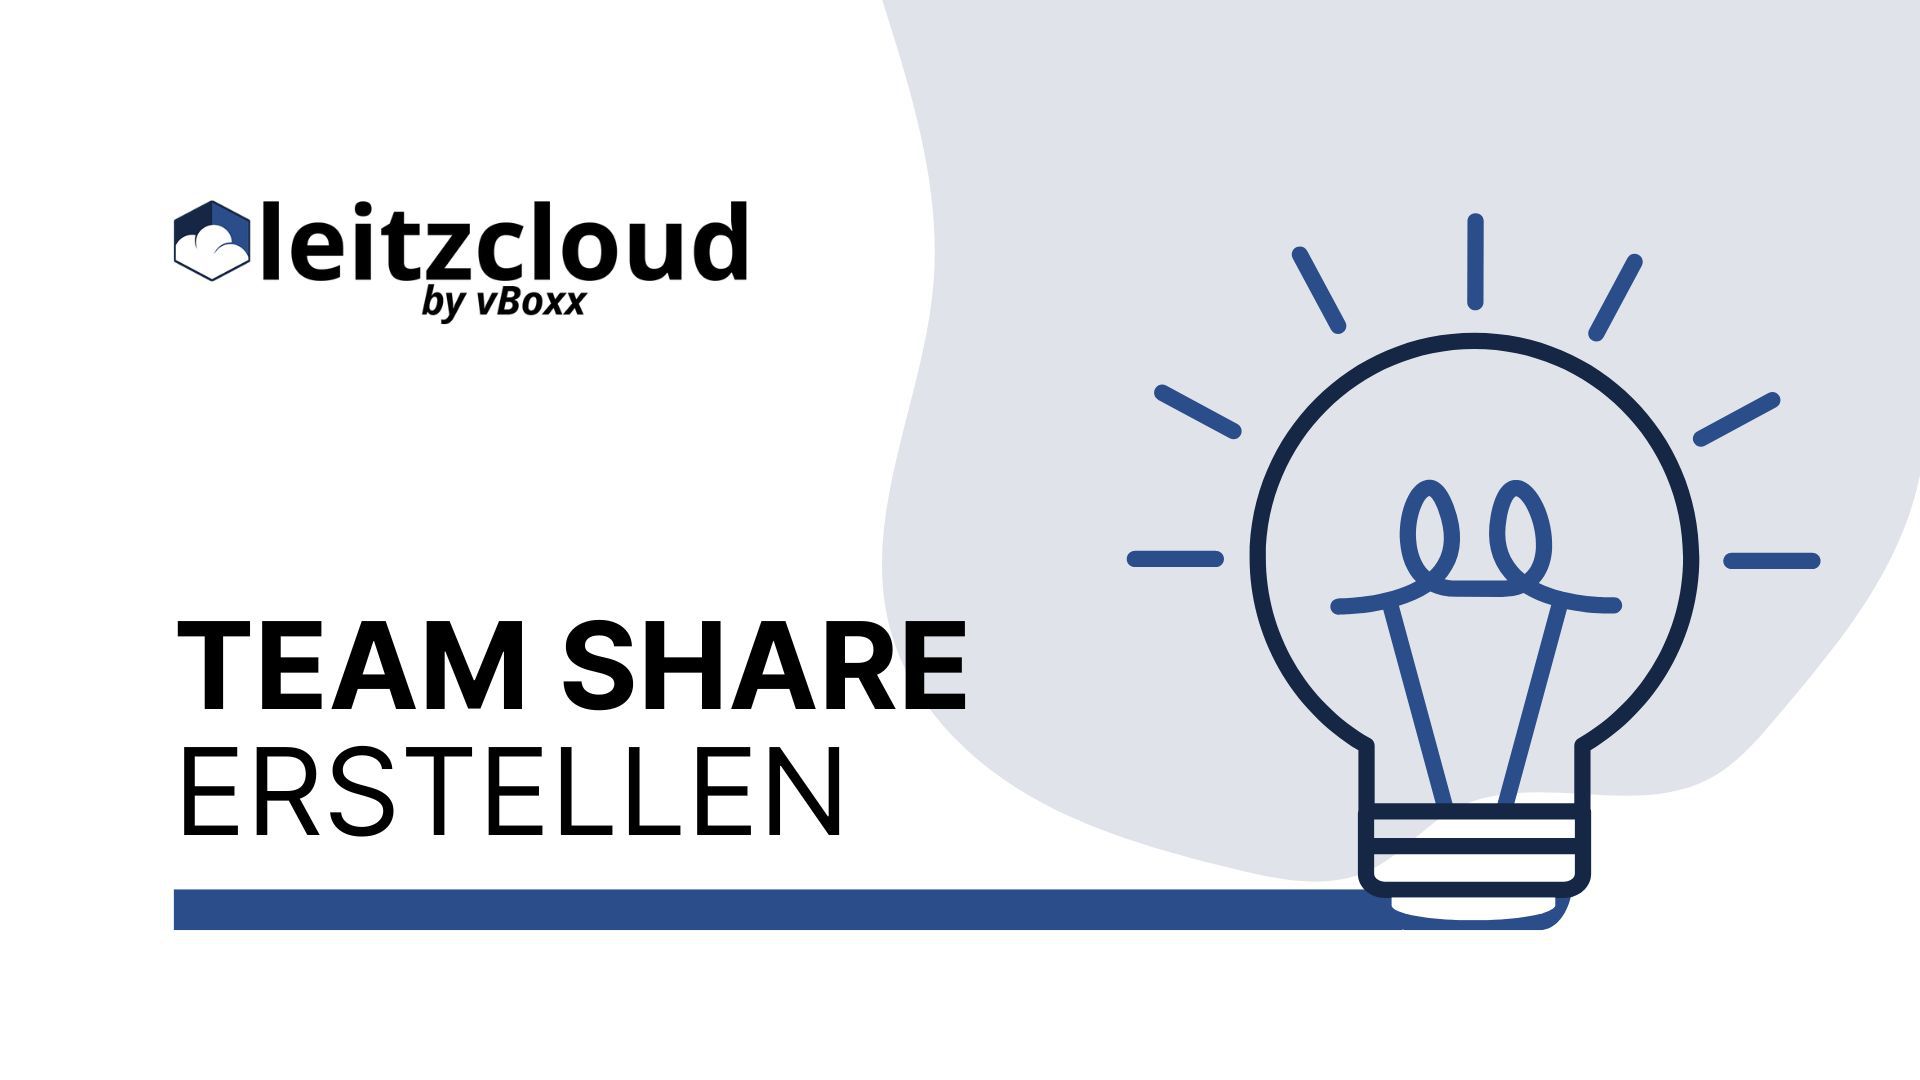 leitzcloud Team Share video